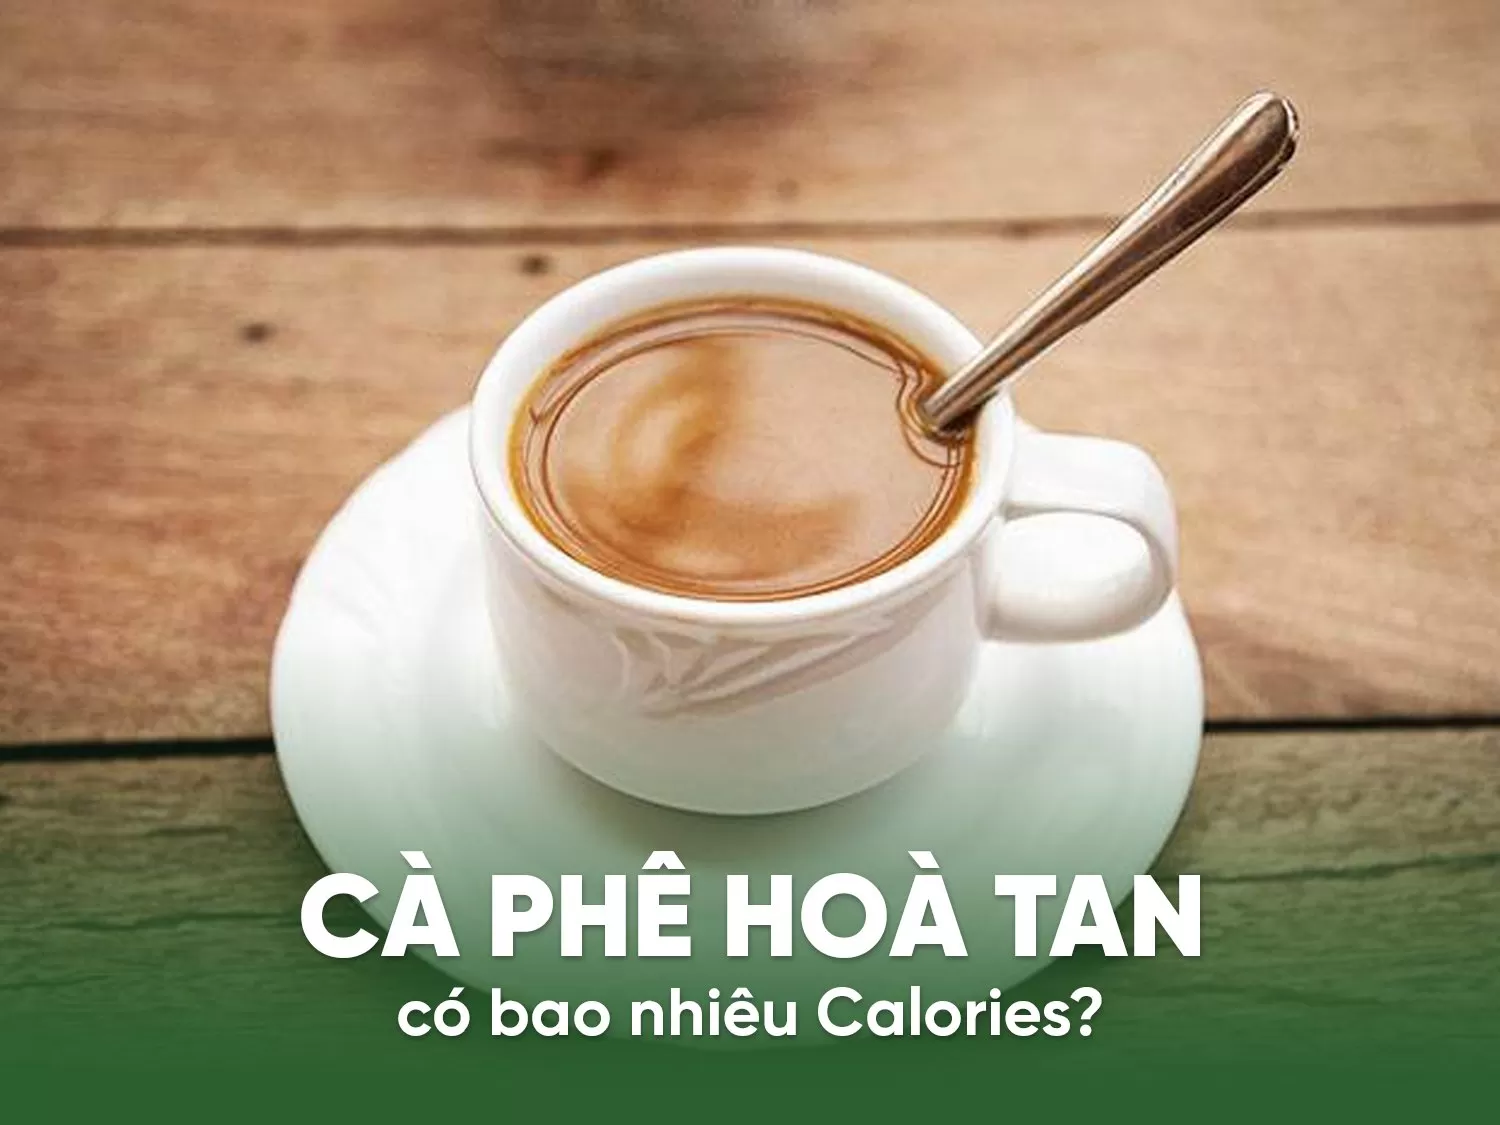 Lượng calories chứa trong cà phê hòa tan là bao nhiêu?